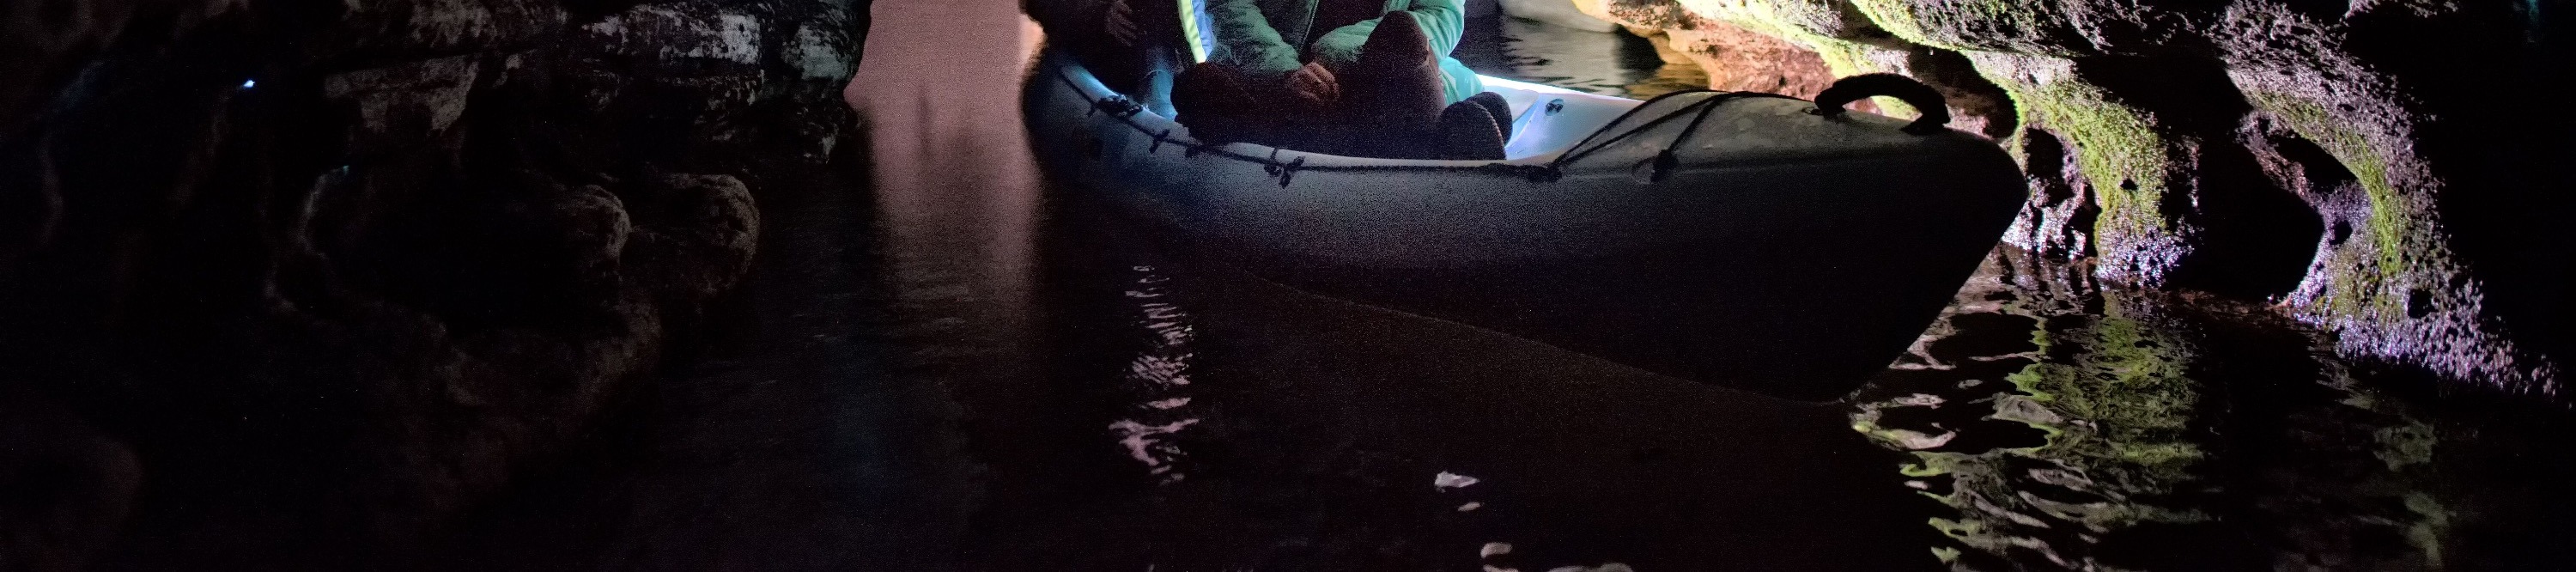 螢火蟲洞獨木舟體驗